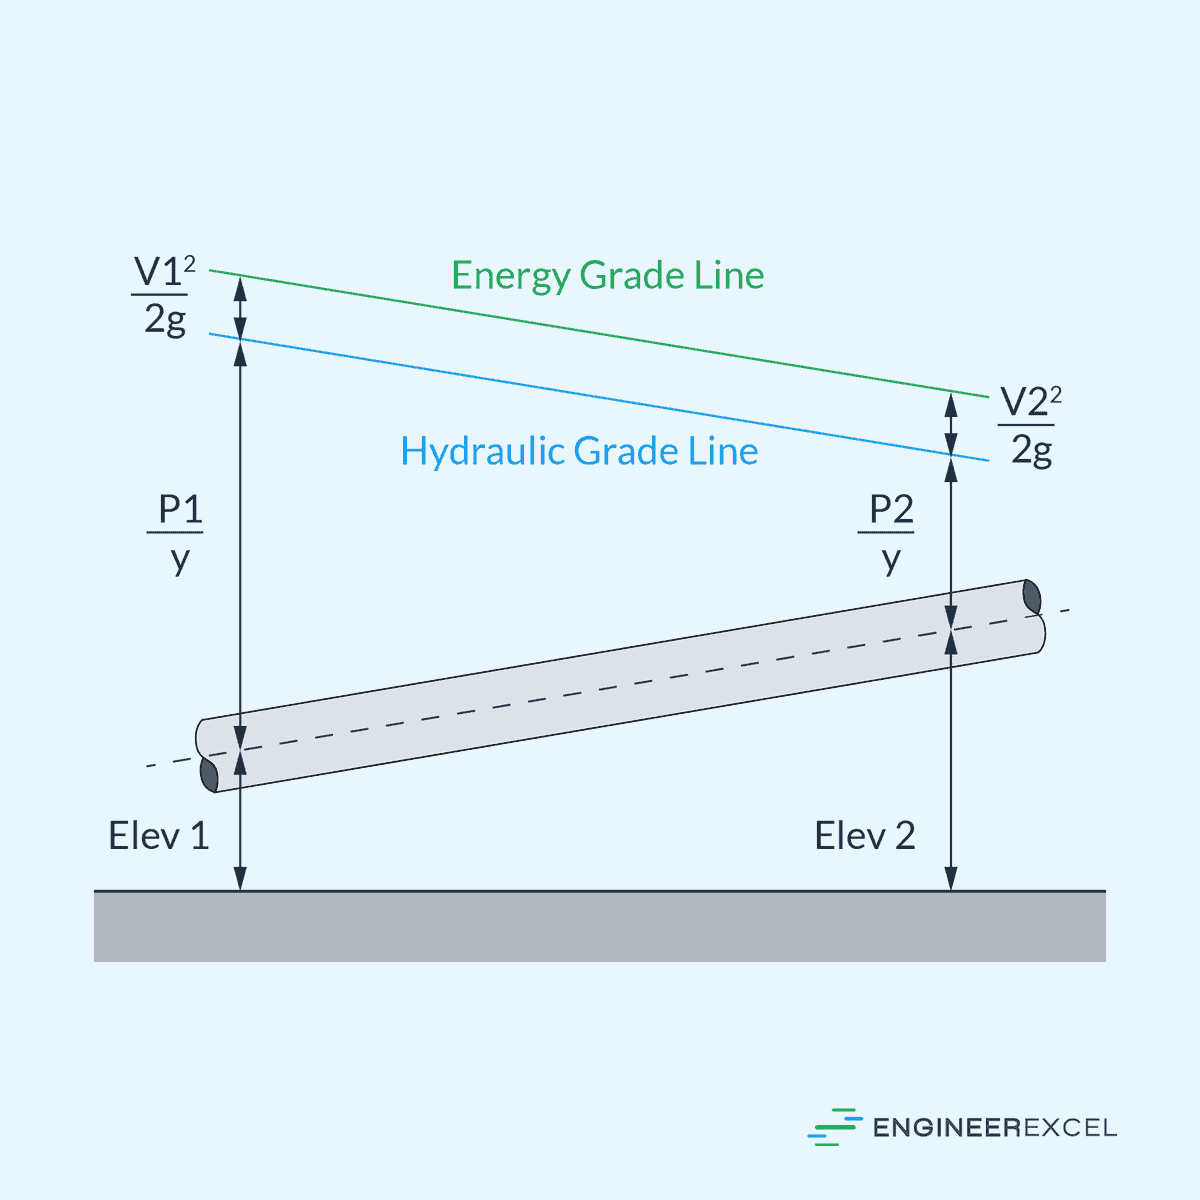 Energy Gradient Line vs Hydraulic Gradient Line